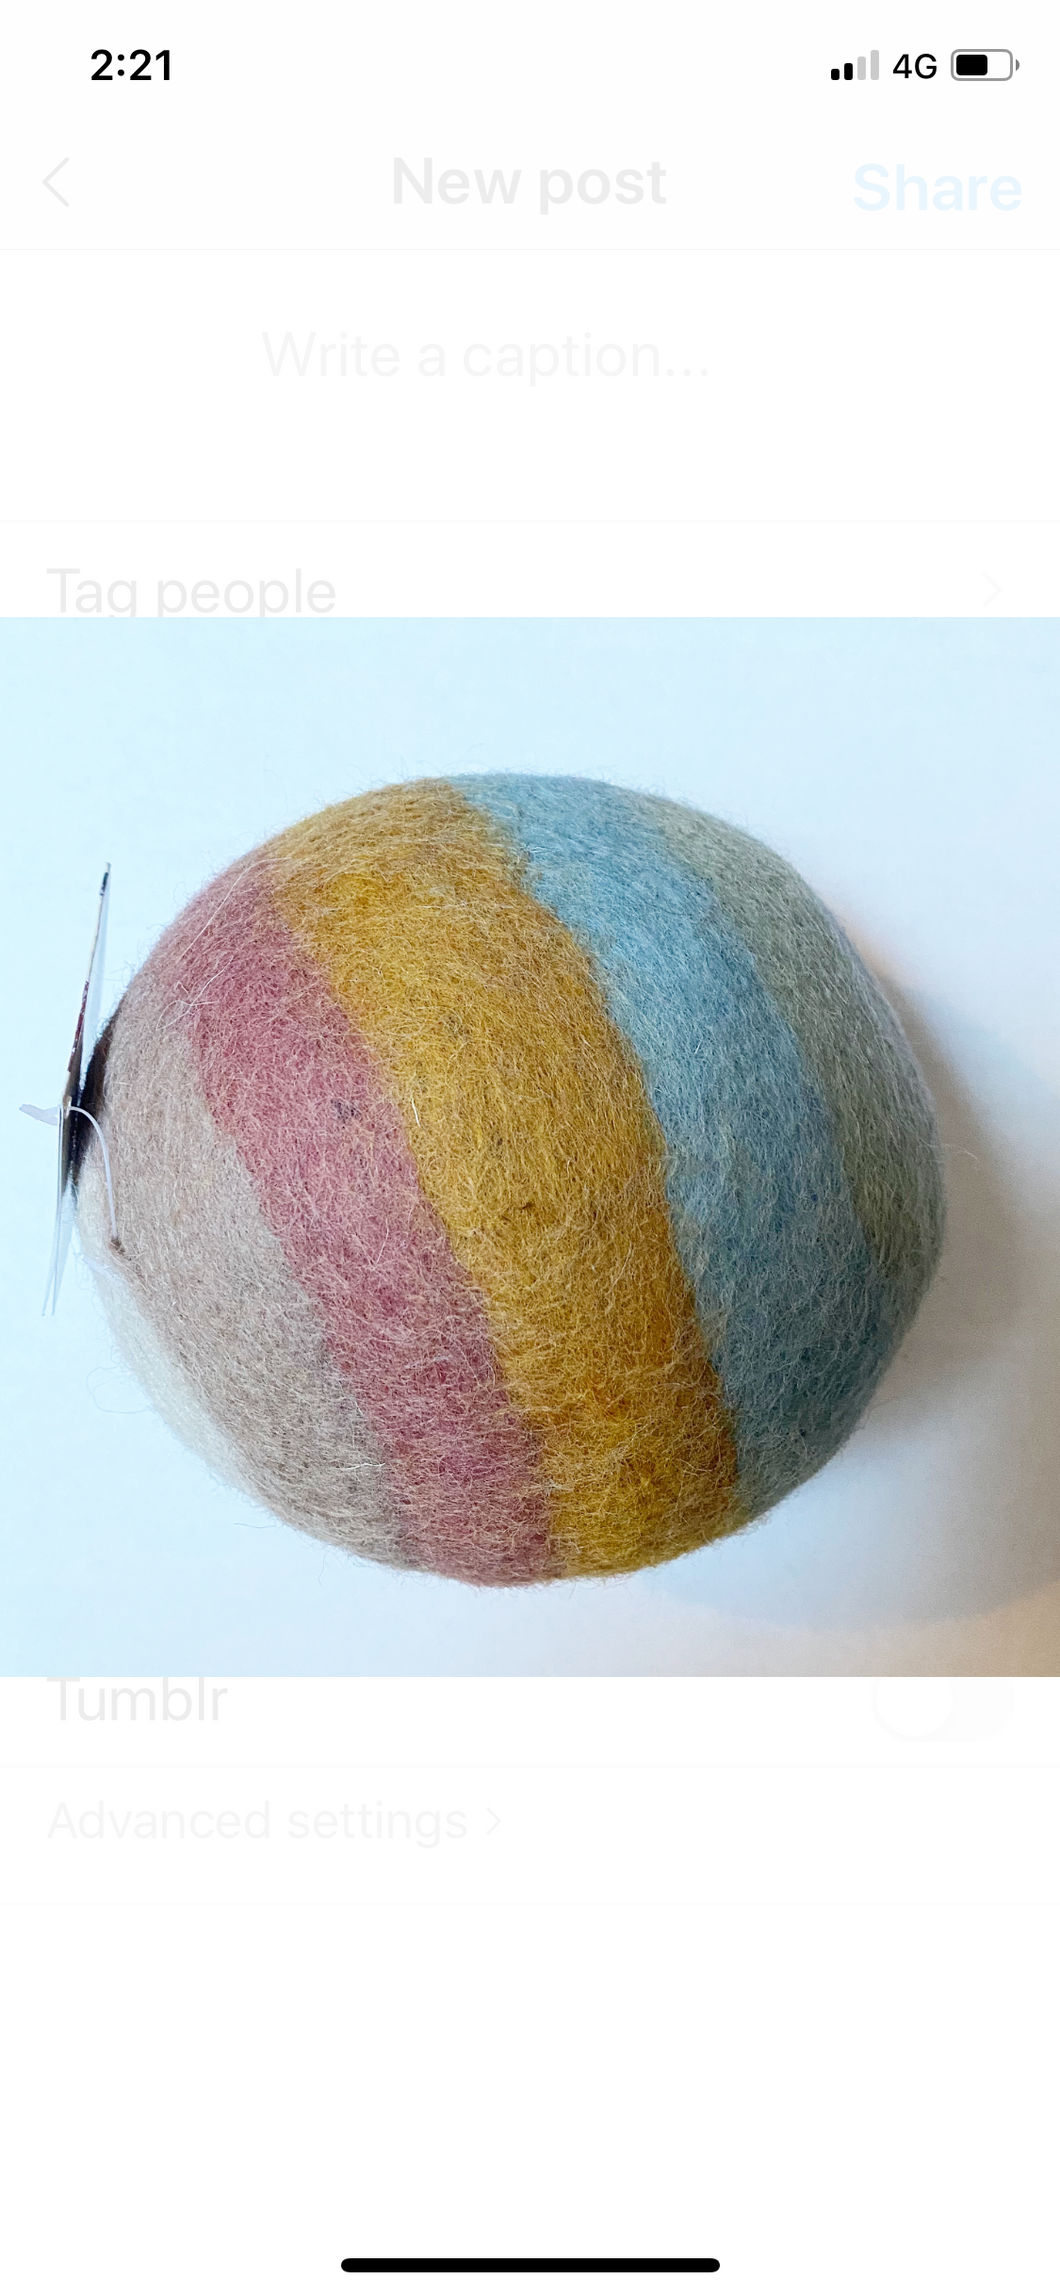 Felt ball - earthy pastel - 2 sizes